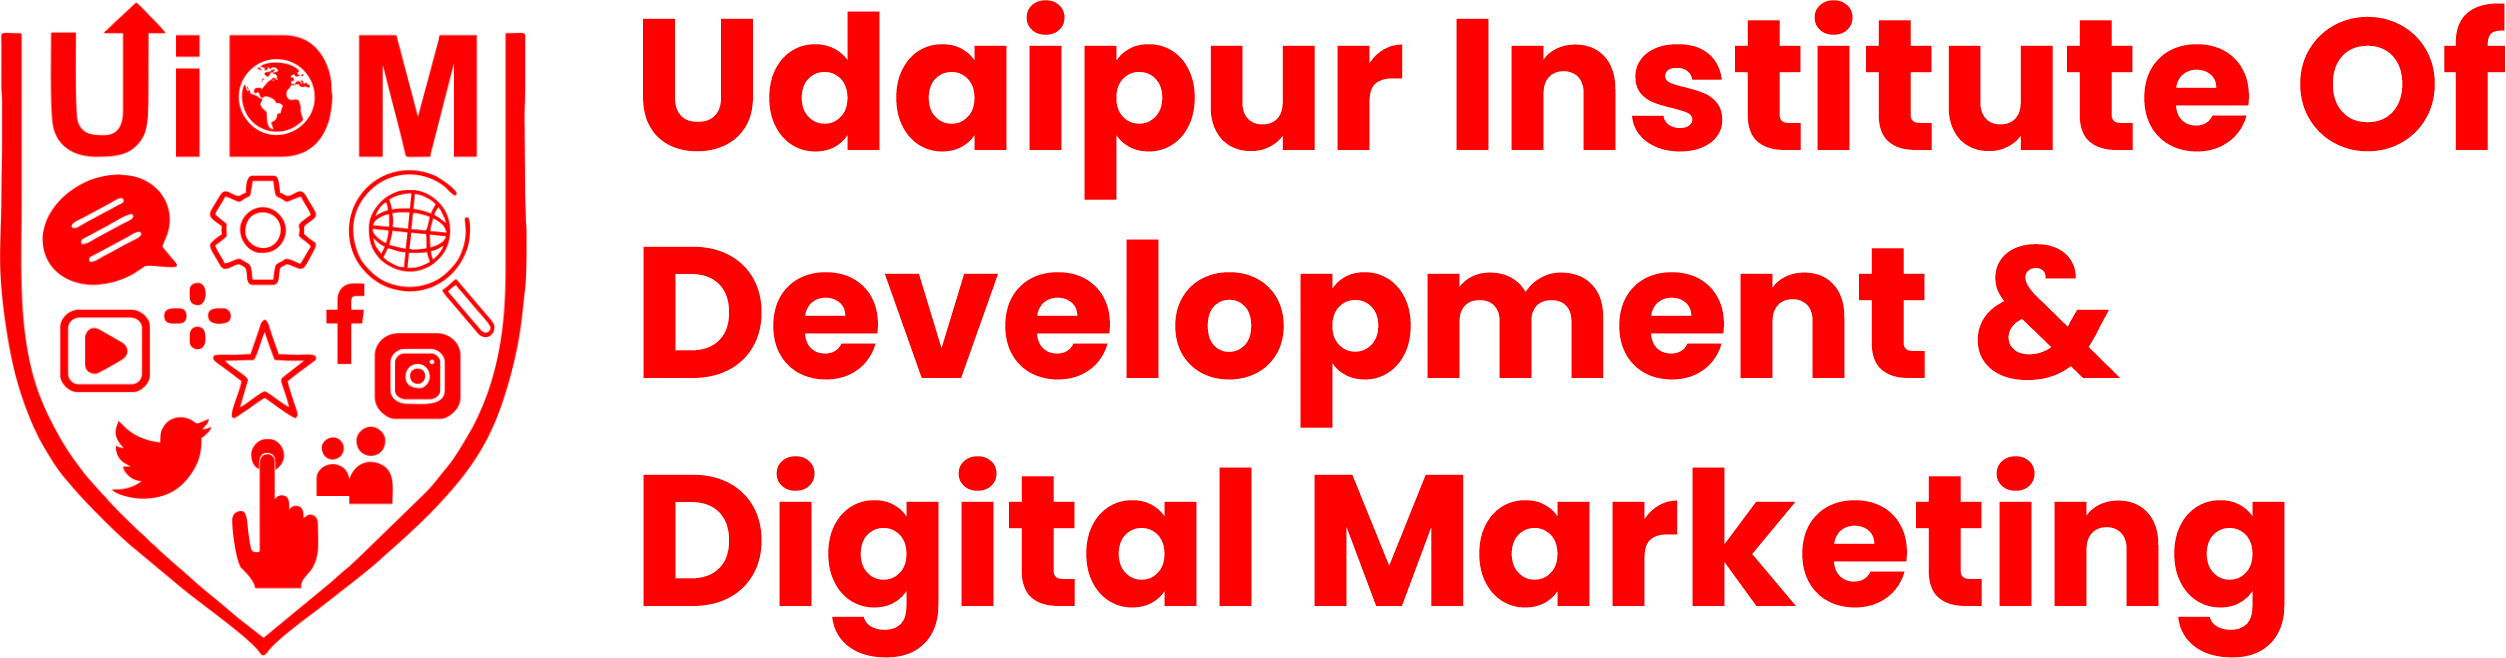 UiDM – Udaipur Institute Of Digital Marketing